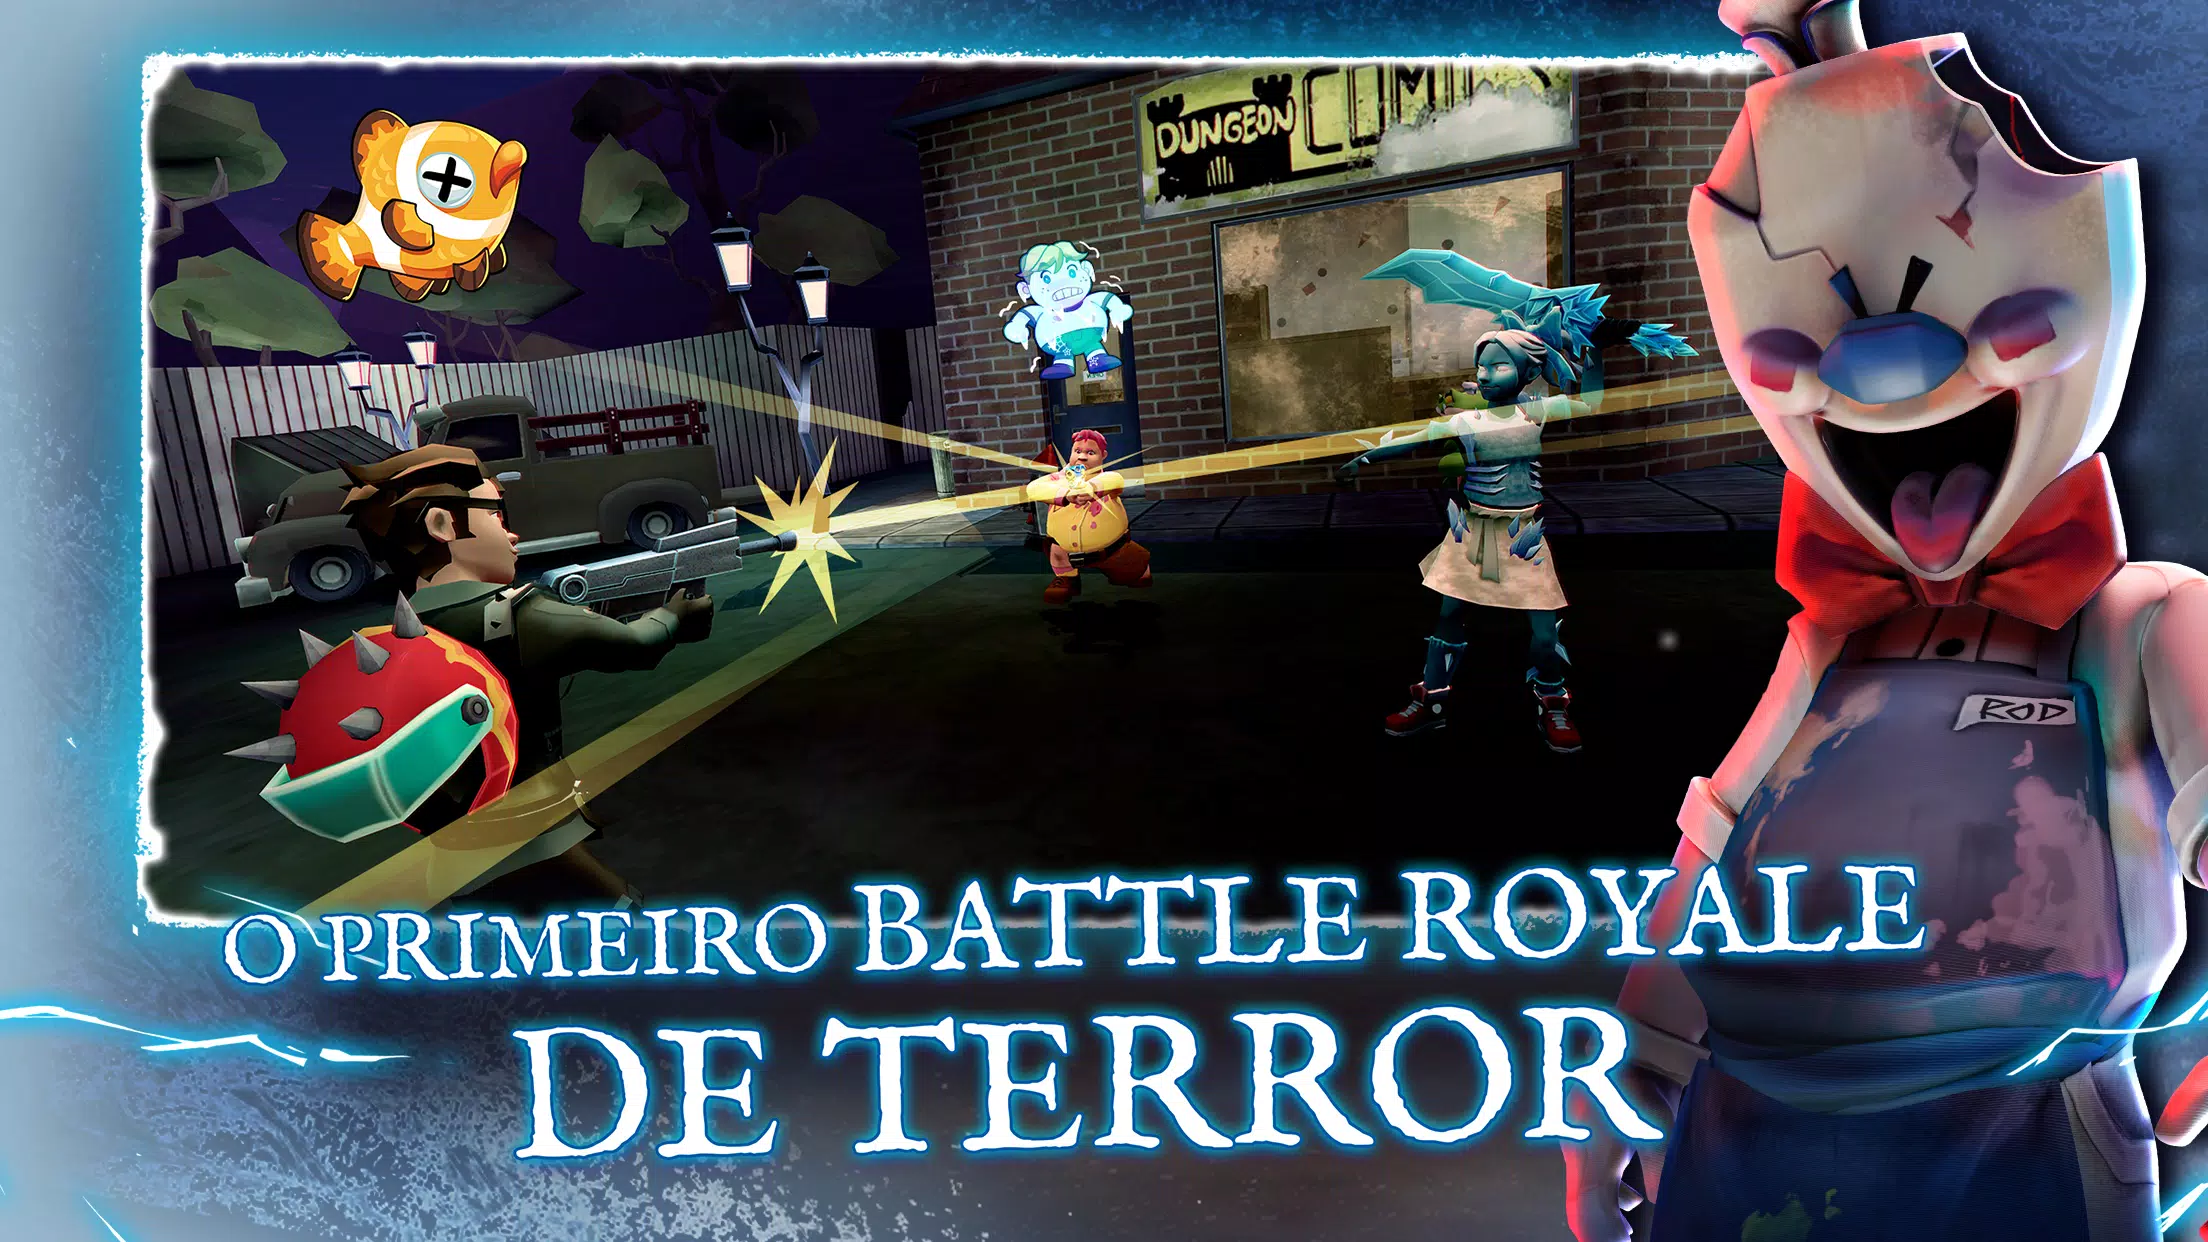 Horror Brawl O Melhor BattleRoyale Com Terror Multiplayer Para Android E  iOS + Download